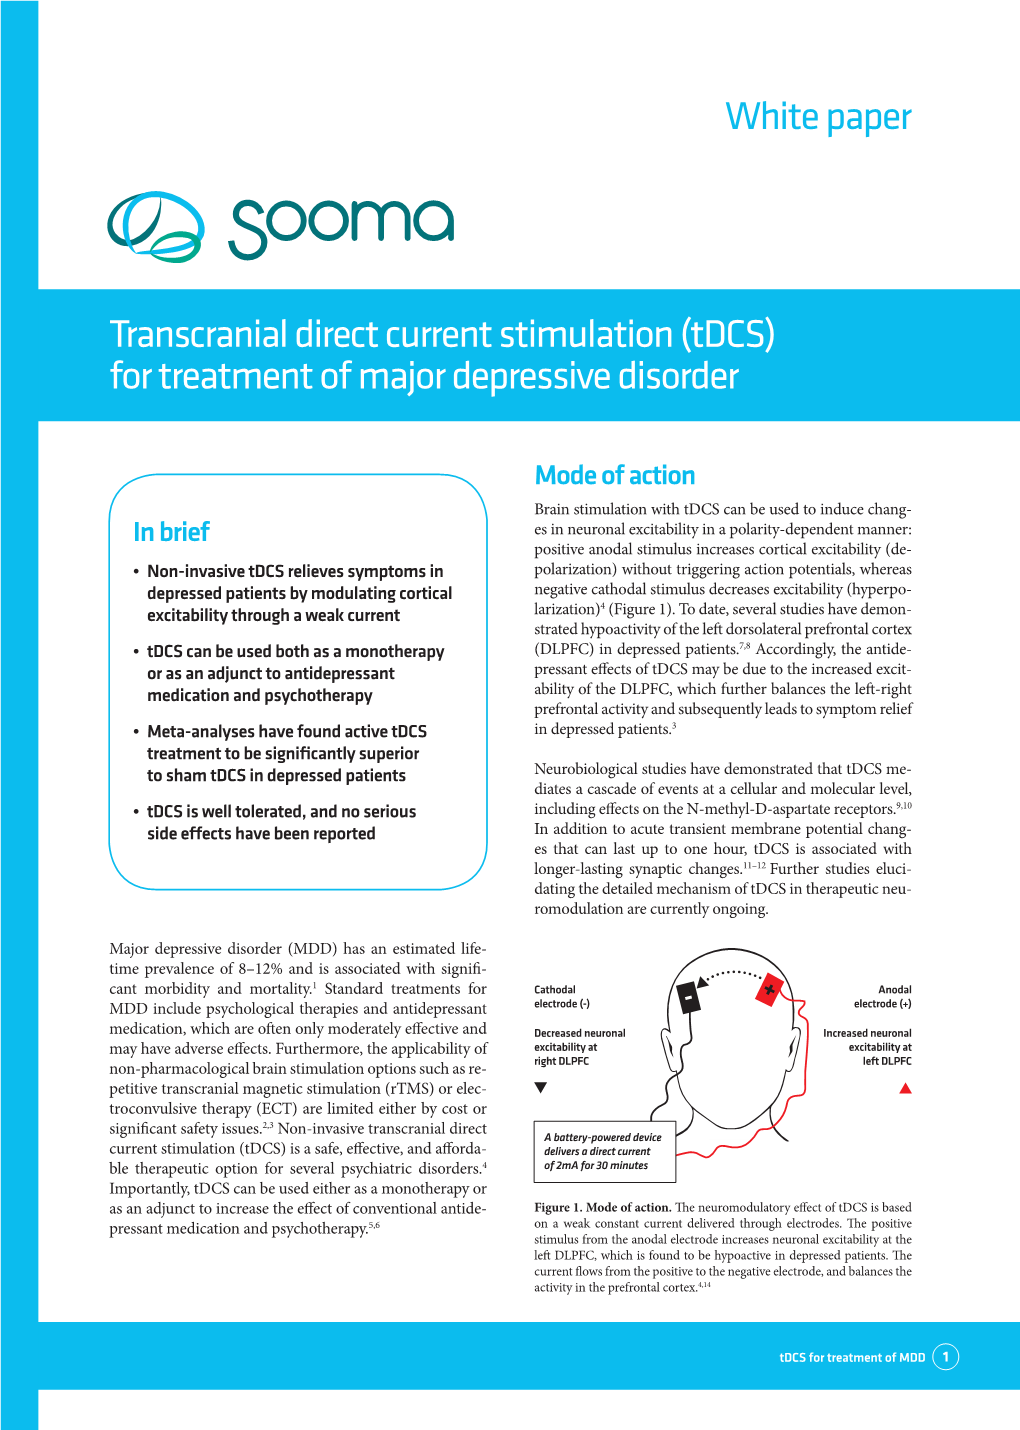 (Tdcs) for Treatment of Major Depressive Disorder White Paper